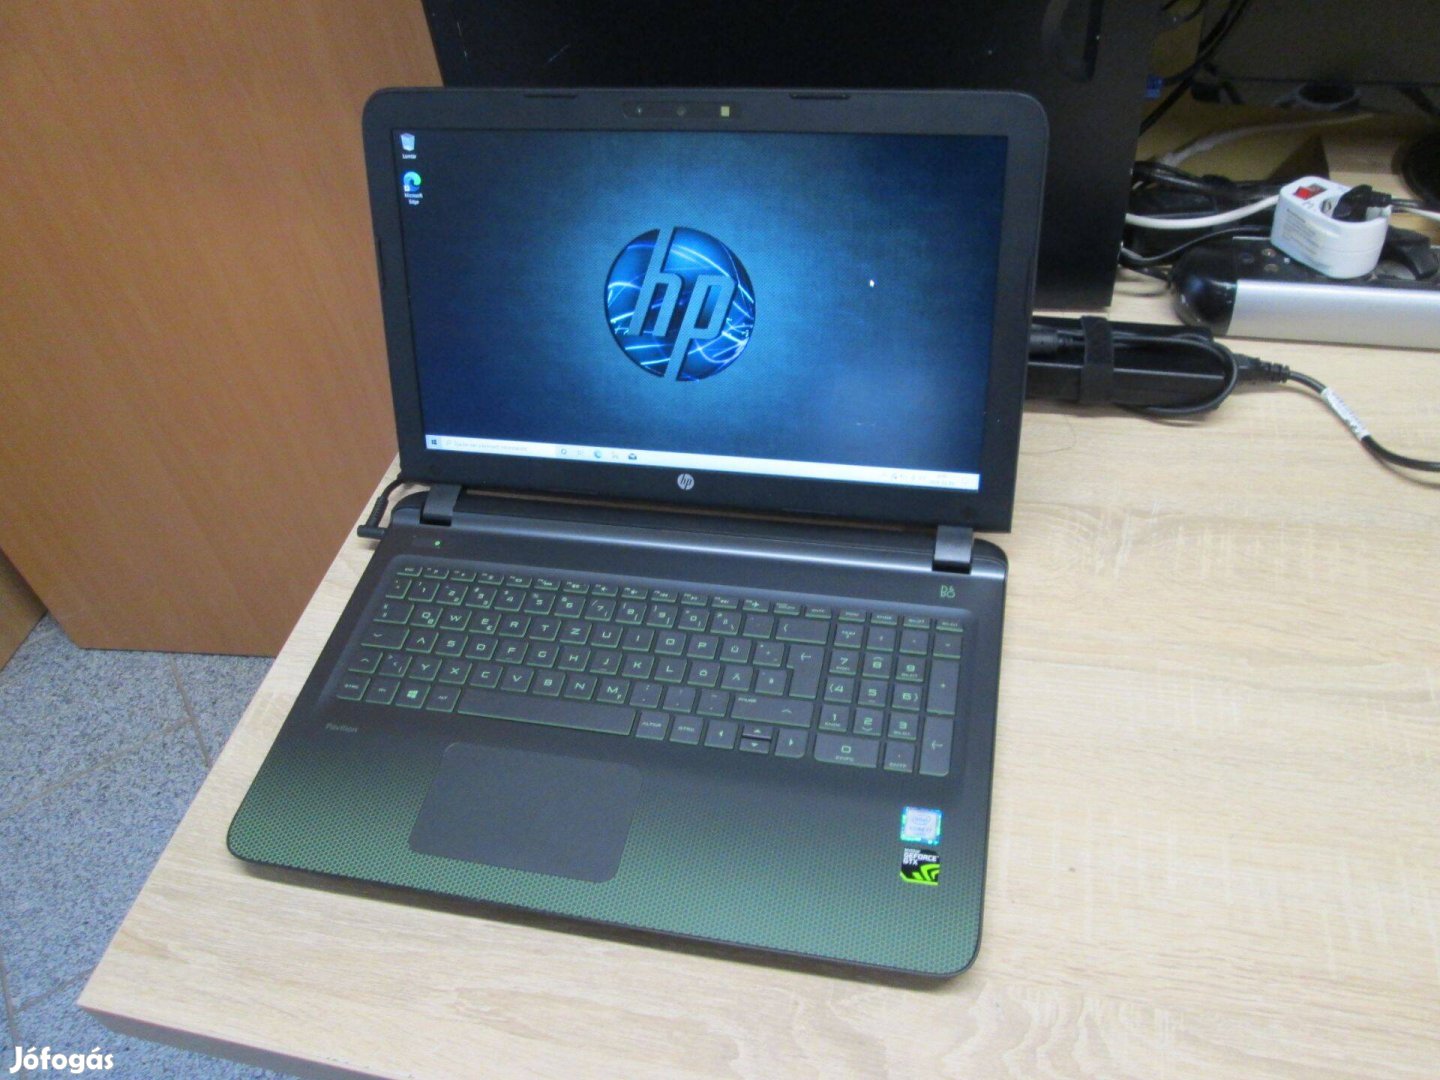 HP Gaming notebook i7 6700HQ, 8 GB., 128 GB. SSD, Gtx 950m, Bang and O